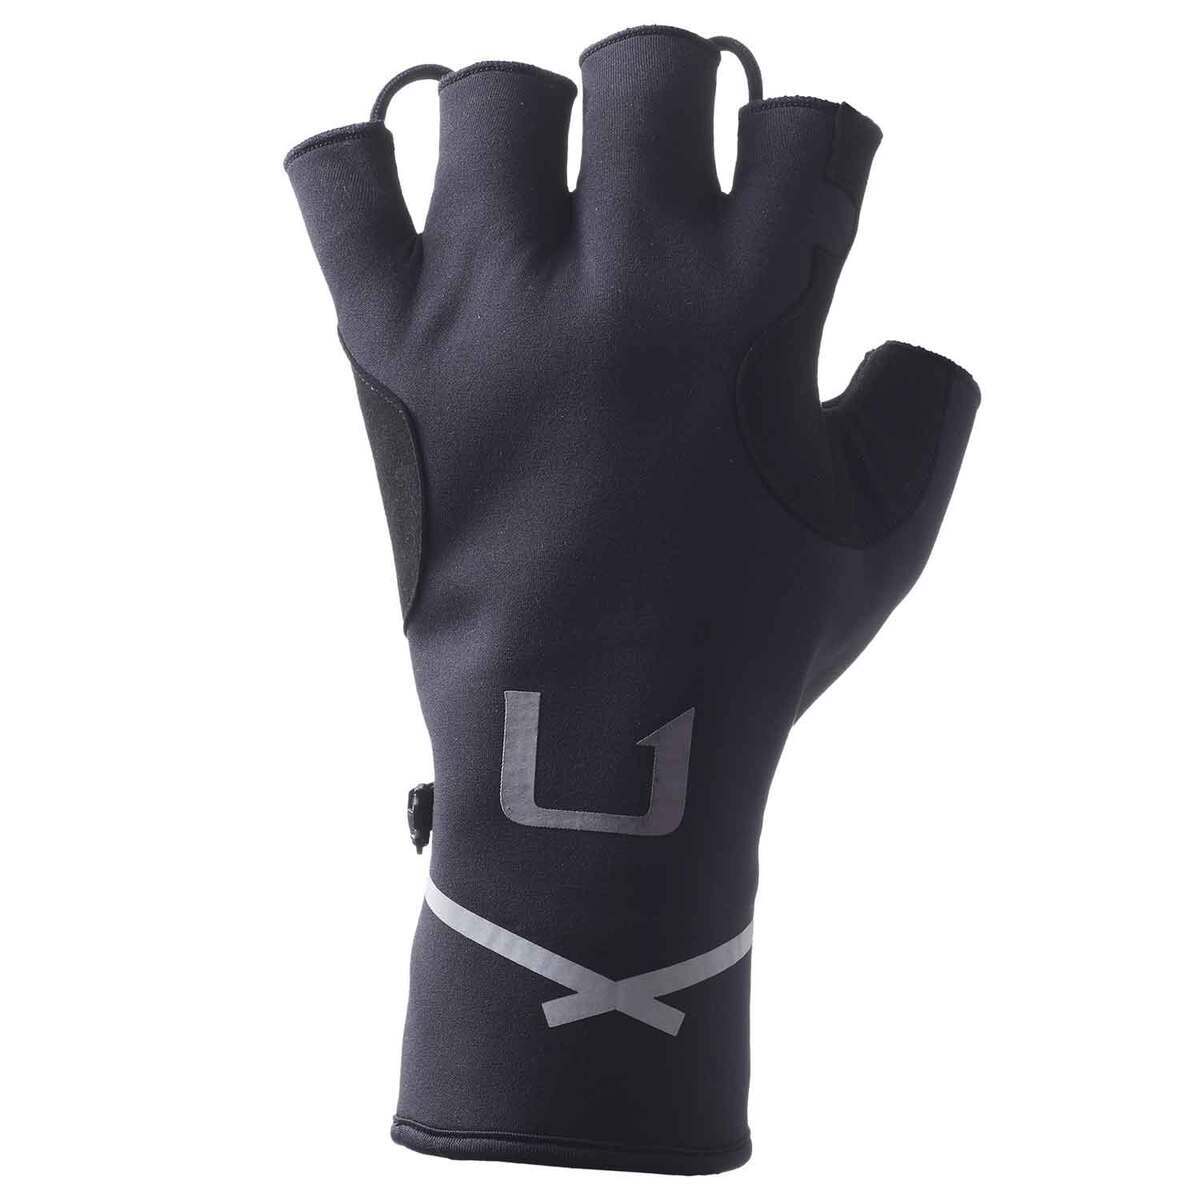 Huk Power Stretch Fingerless Gloves H3000399 S/M, Black